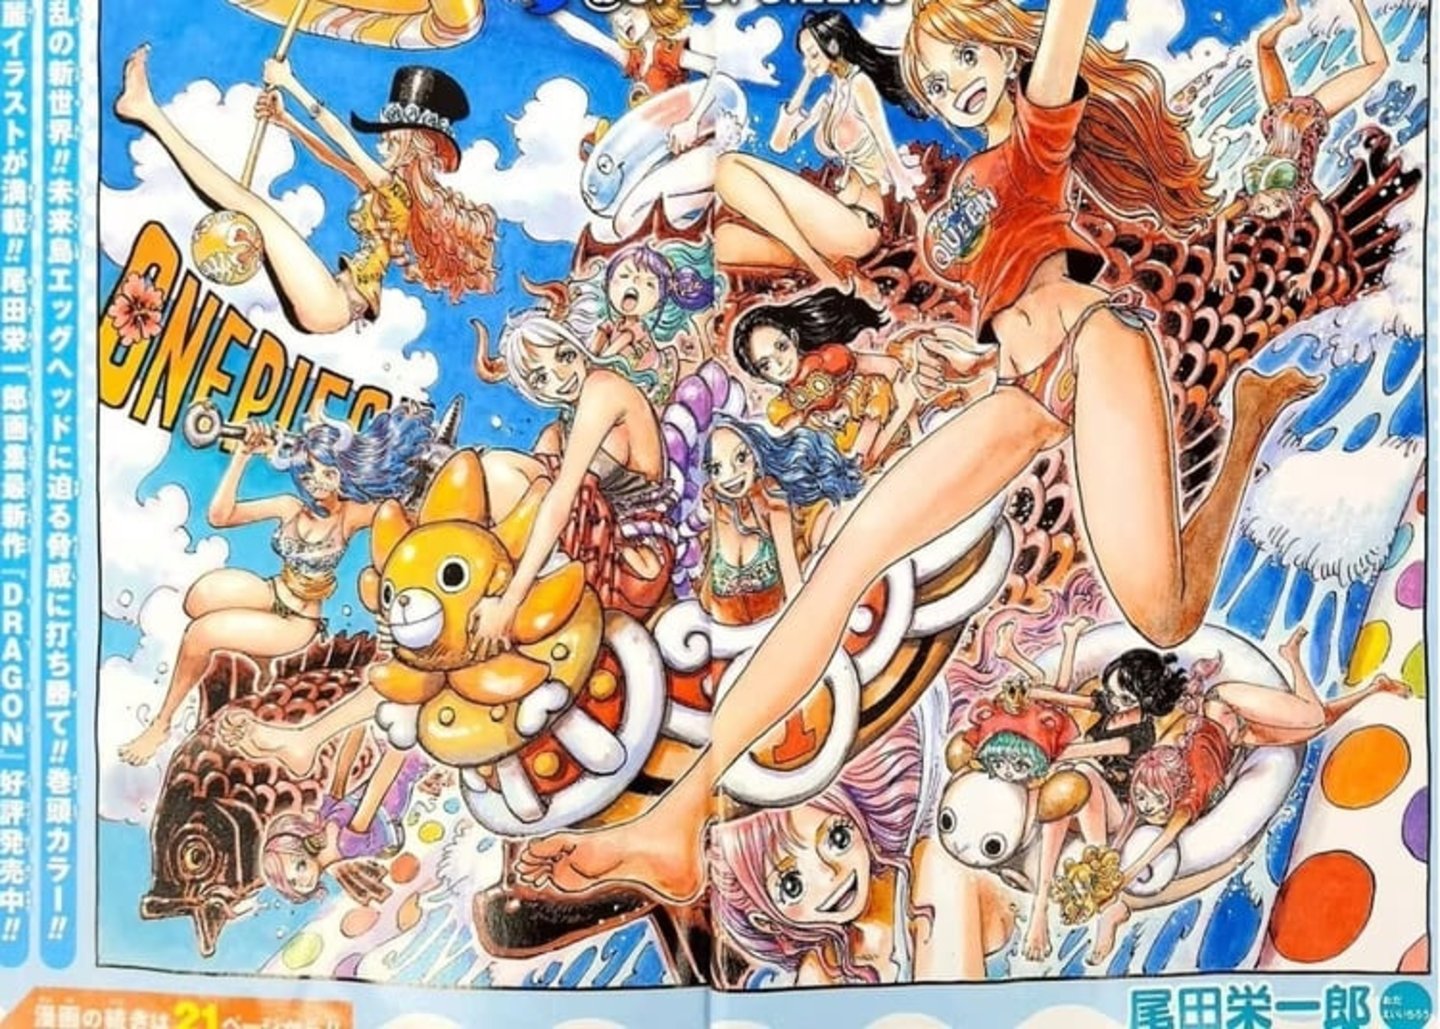 Una ilustración de Yamato en One Piece genera una enorme polémica entre la comunidad